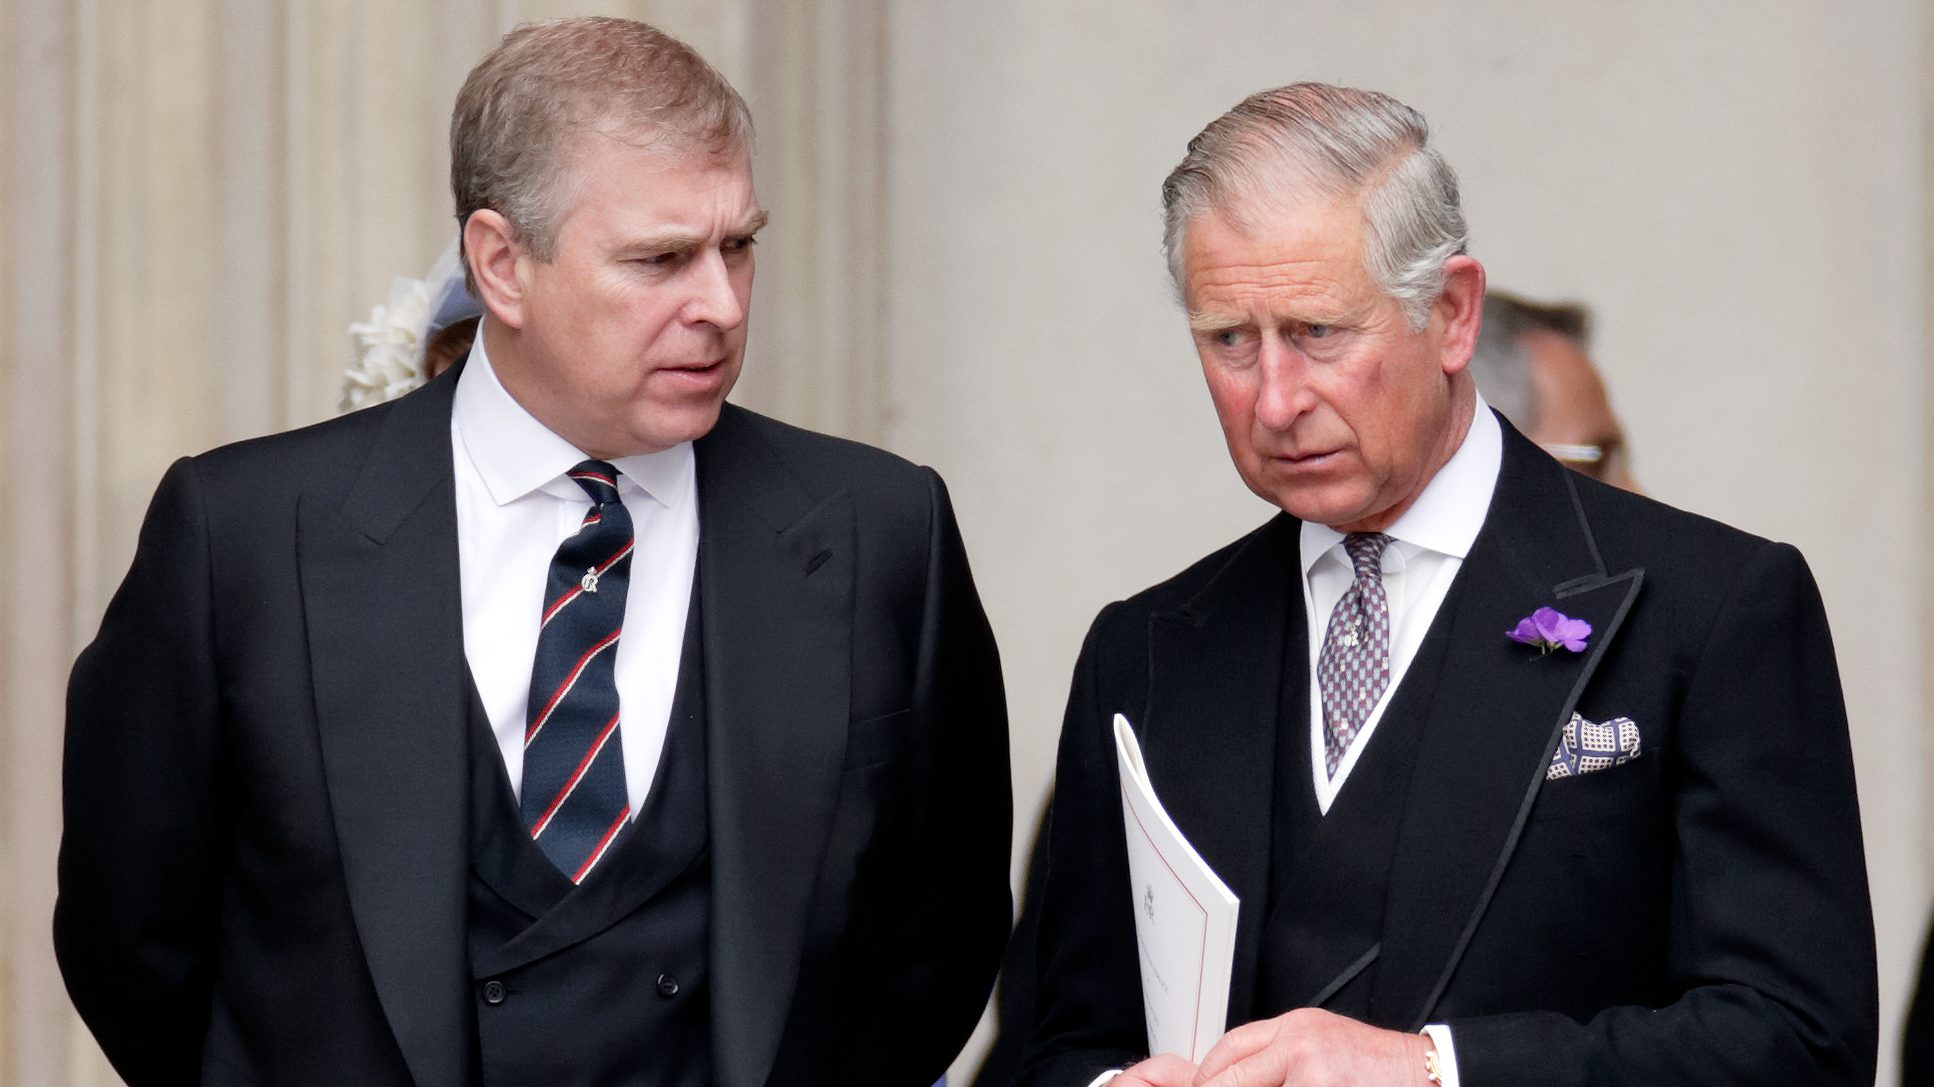 Károly herceg szerint a zaklatással vádolt András herceg csorbítja a monarchia hírnevét